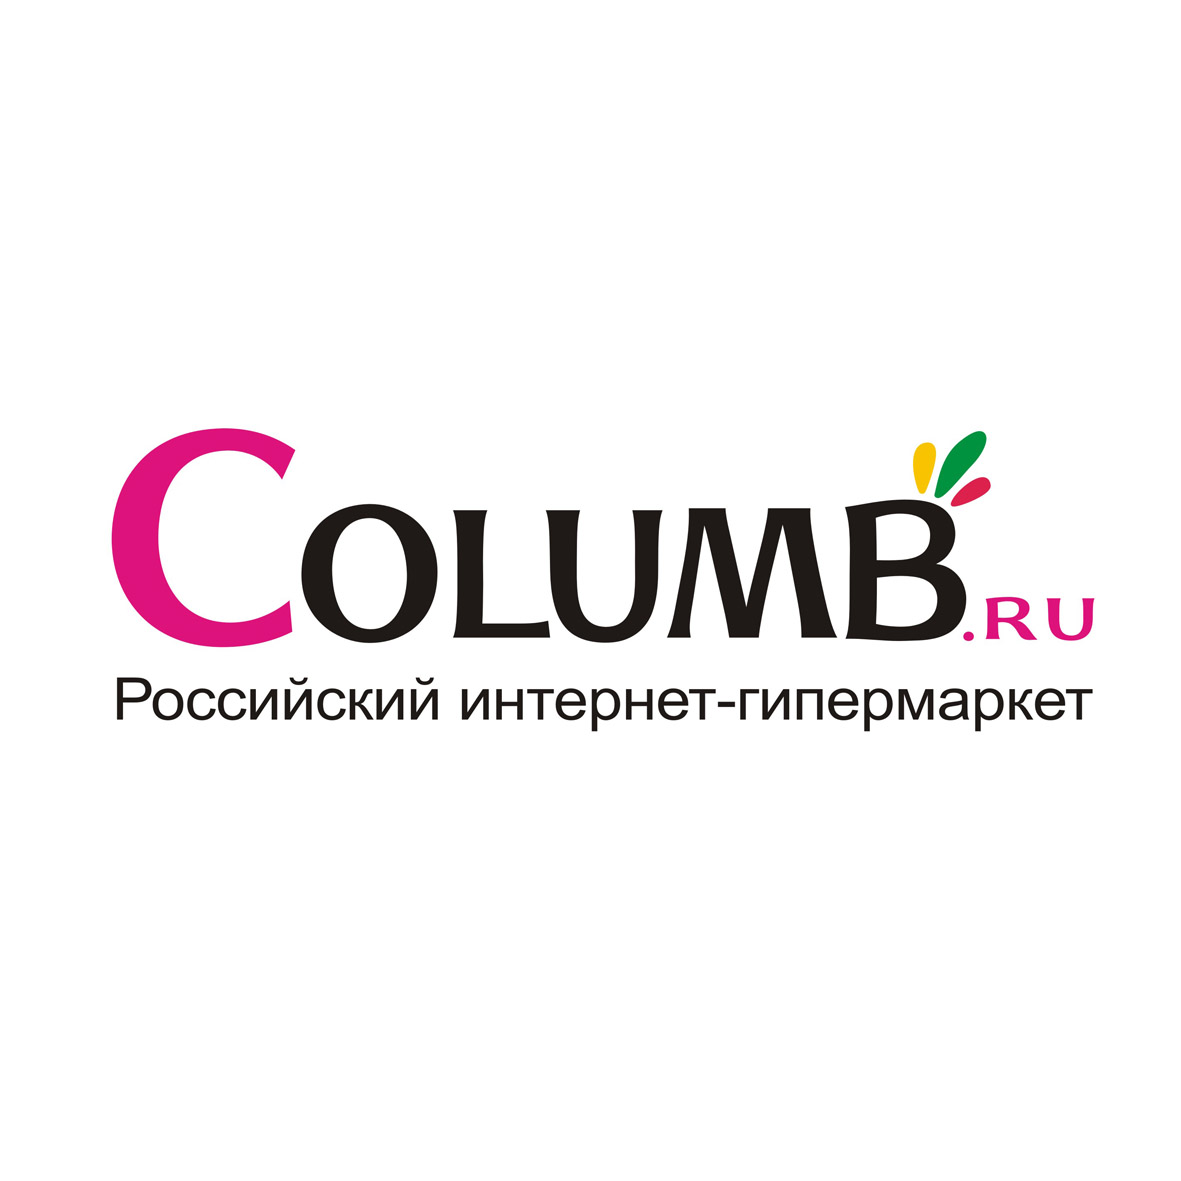 В Рунете стартовал новый проект – Интернет-гипермаркет Columb.ru